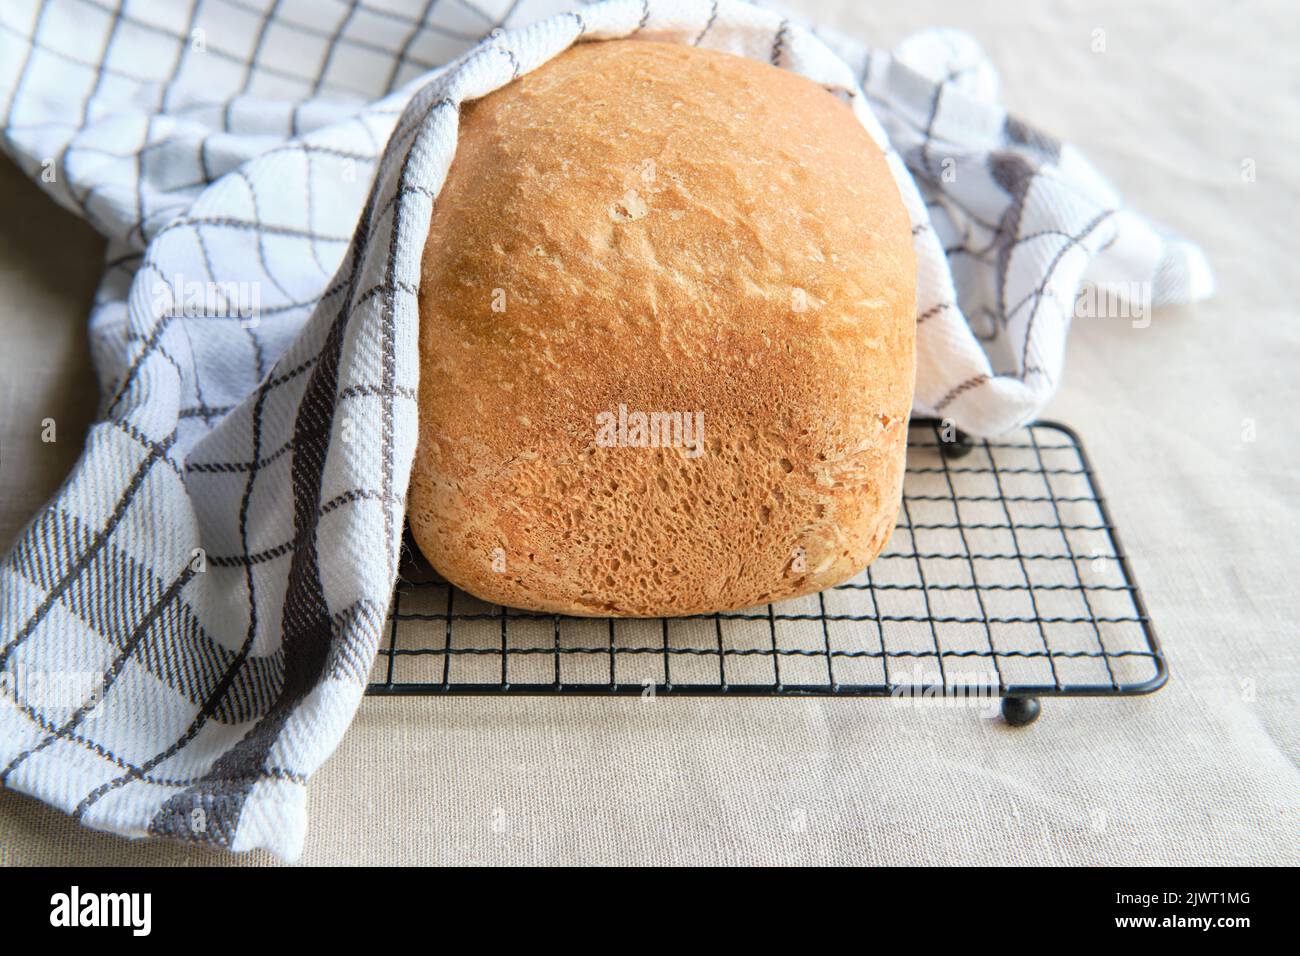 Hausgemachtes Bauernhaus gemischtes Brot. Nahaufnahme von Brot, das in der Backmaschine gebacken wurde. Vollkornbrot auf Trockengestell mit gestreifem Handtuch auf Textil Stockfoto